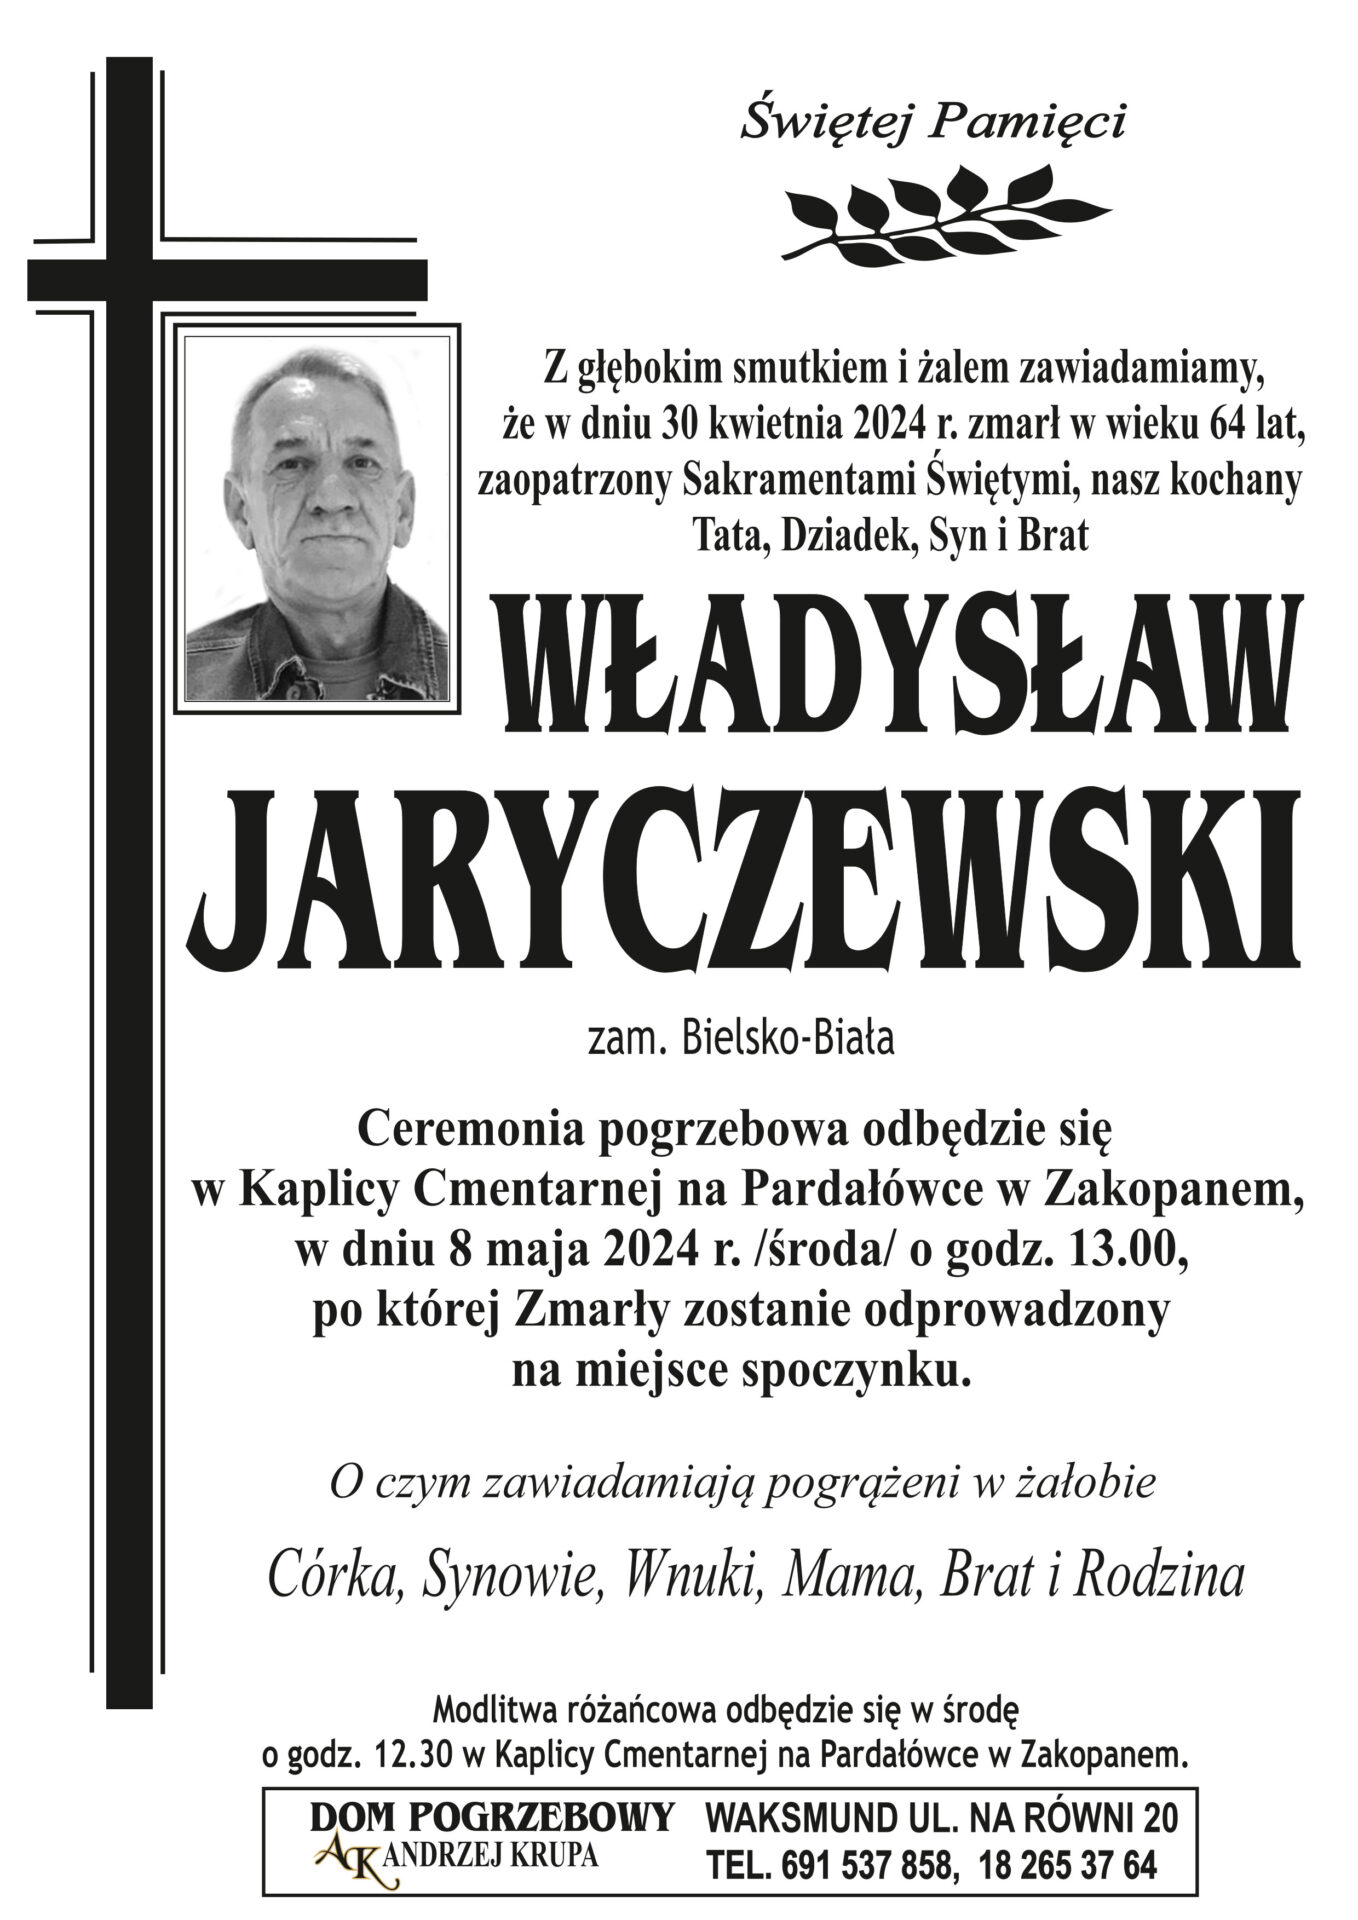 Władysław Jaryczewski